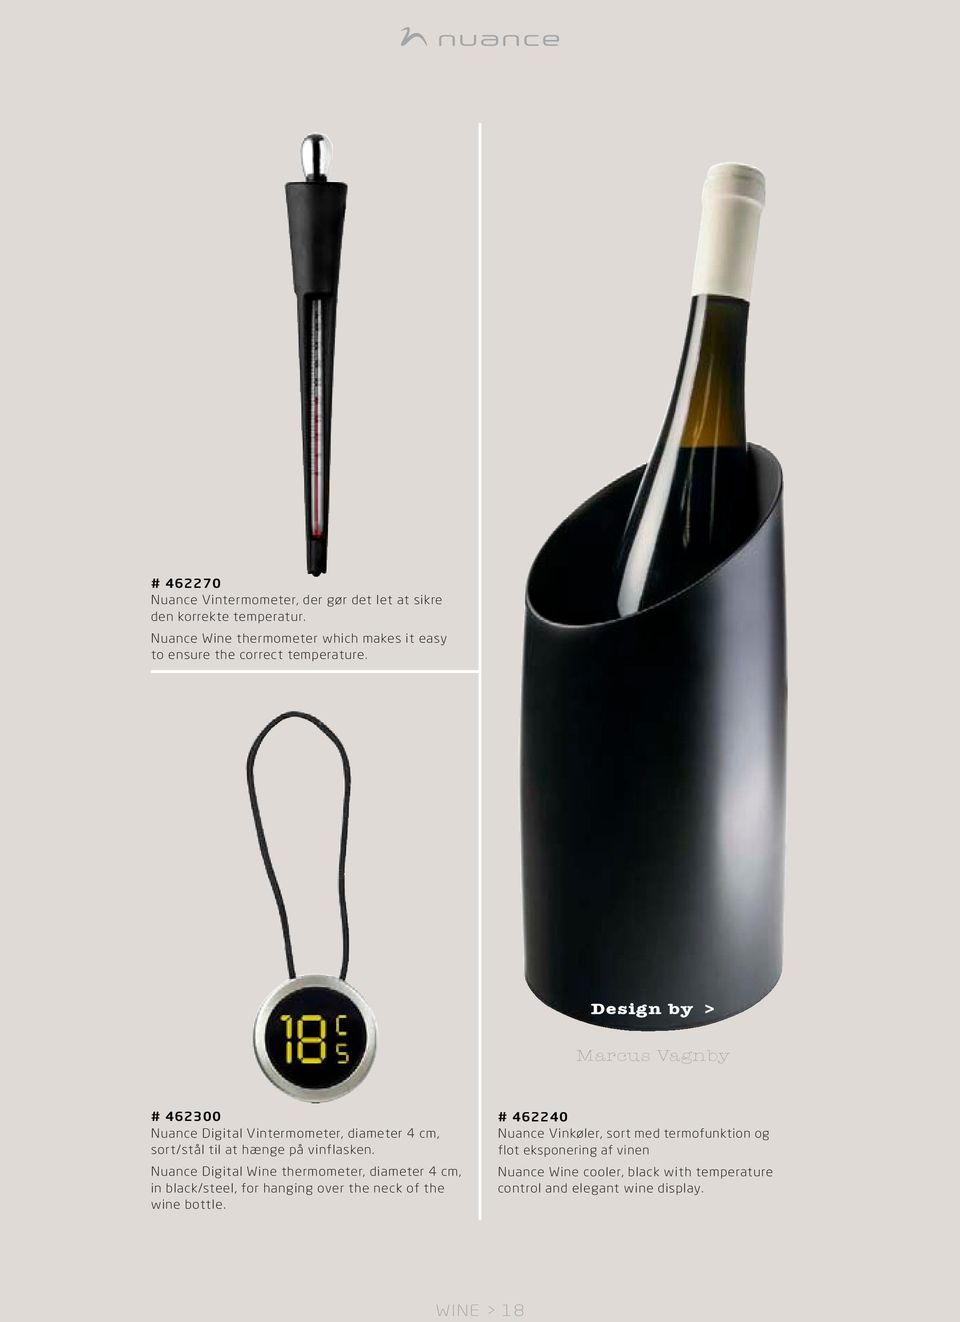 Design by > Marcus Vagnby # 462300 Nuance Digital Vintermometer, diameter 4 cm, sort/stål til at hænge på vinflasken.